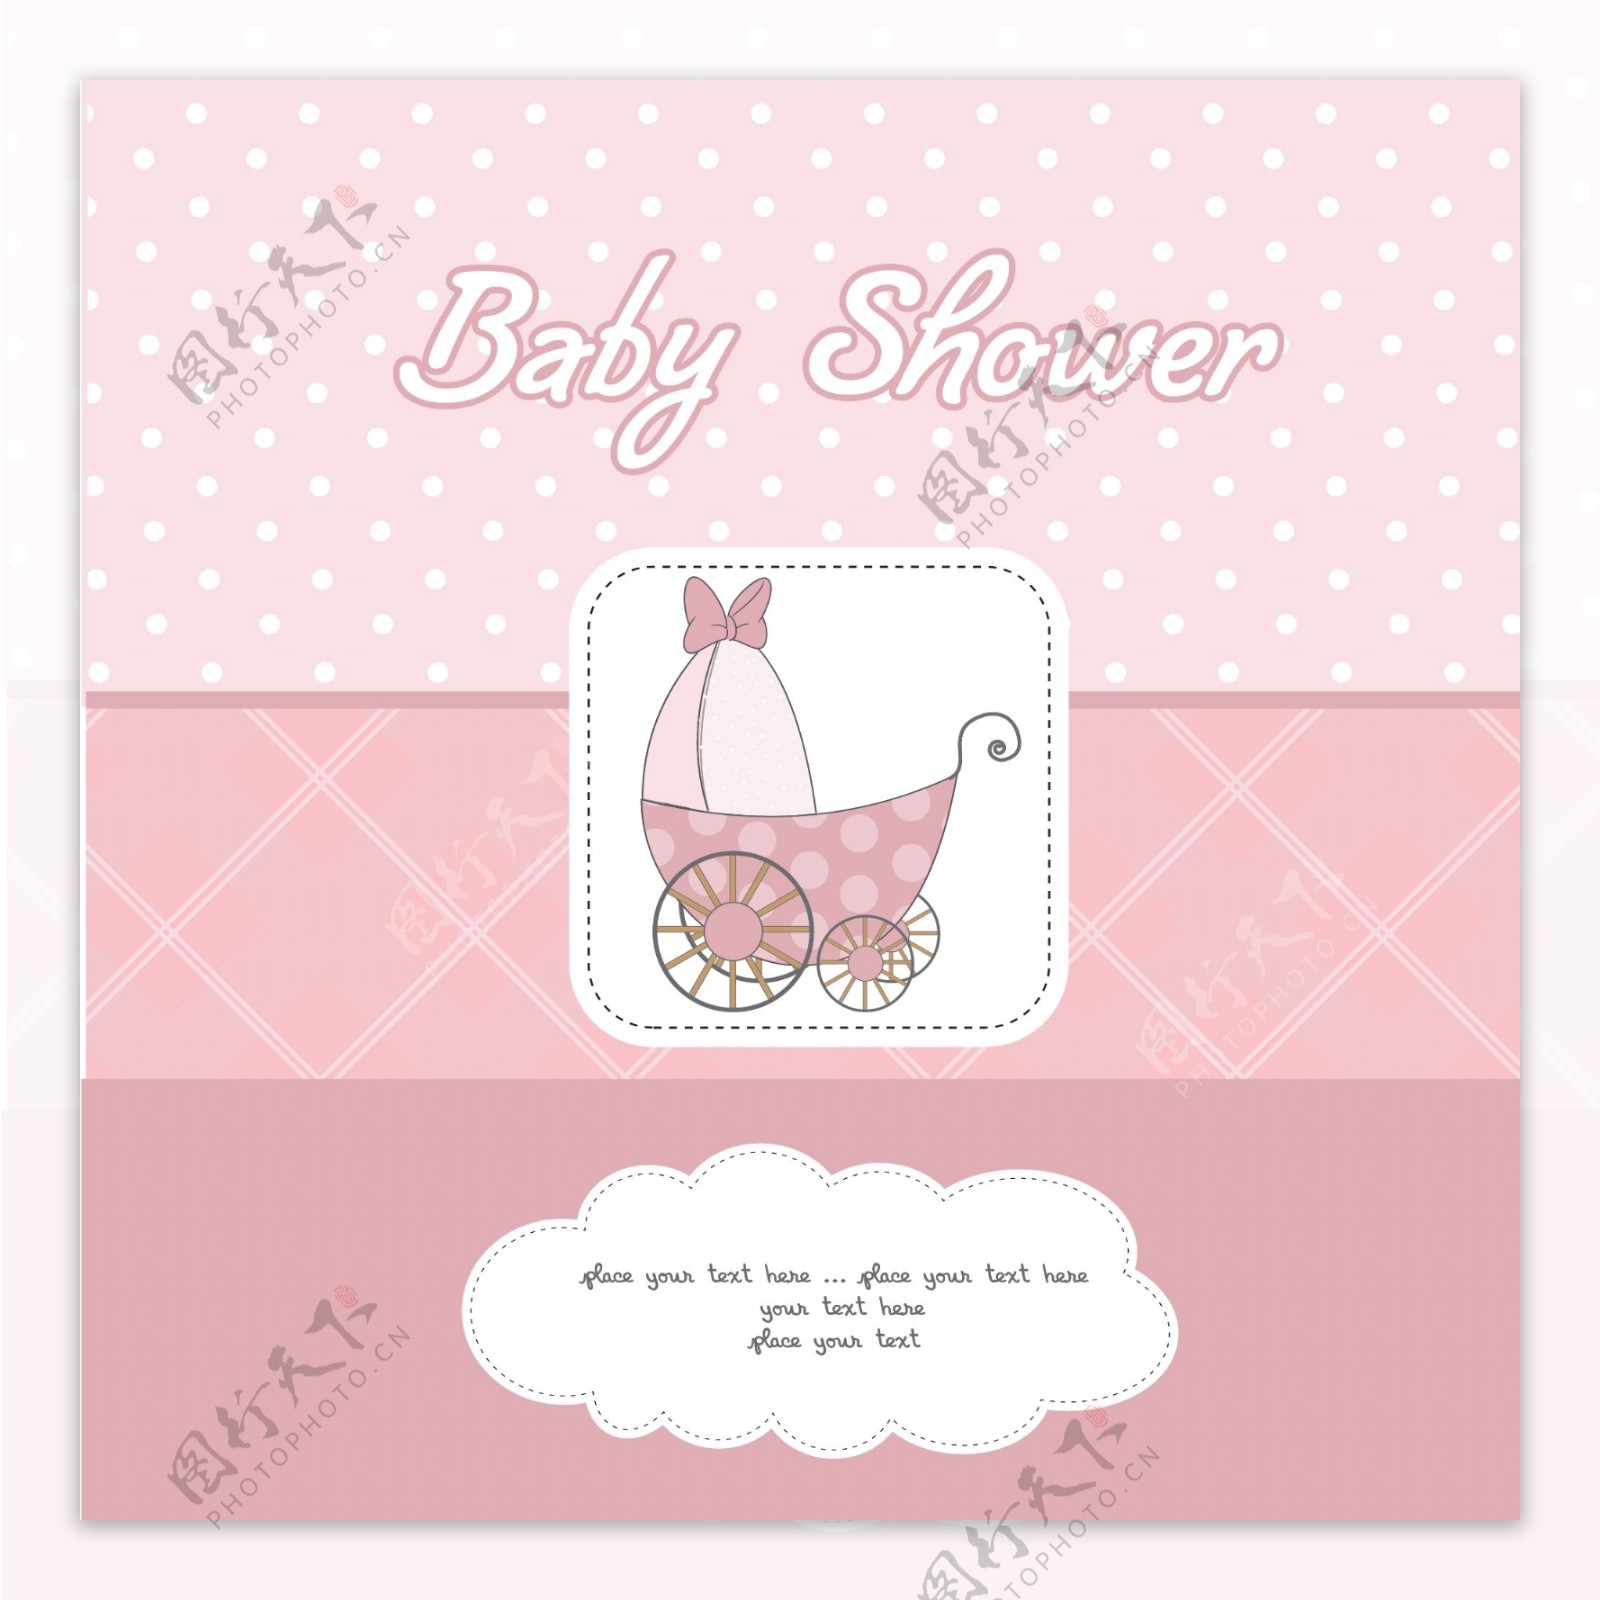 婴儿淋浴粉红色卡片与童车